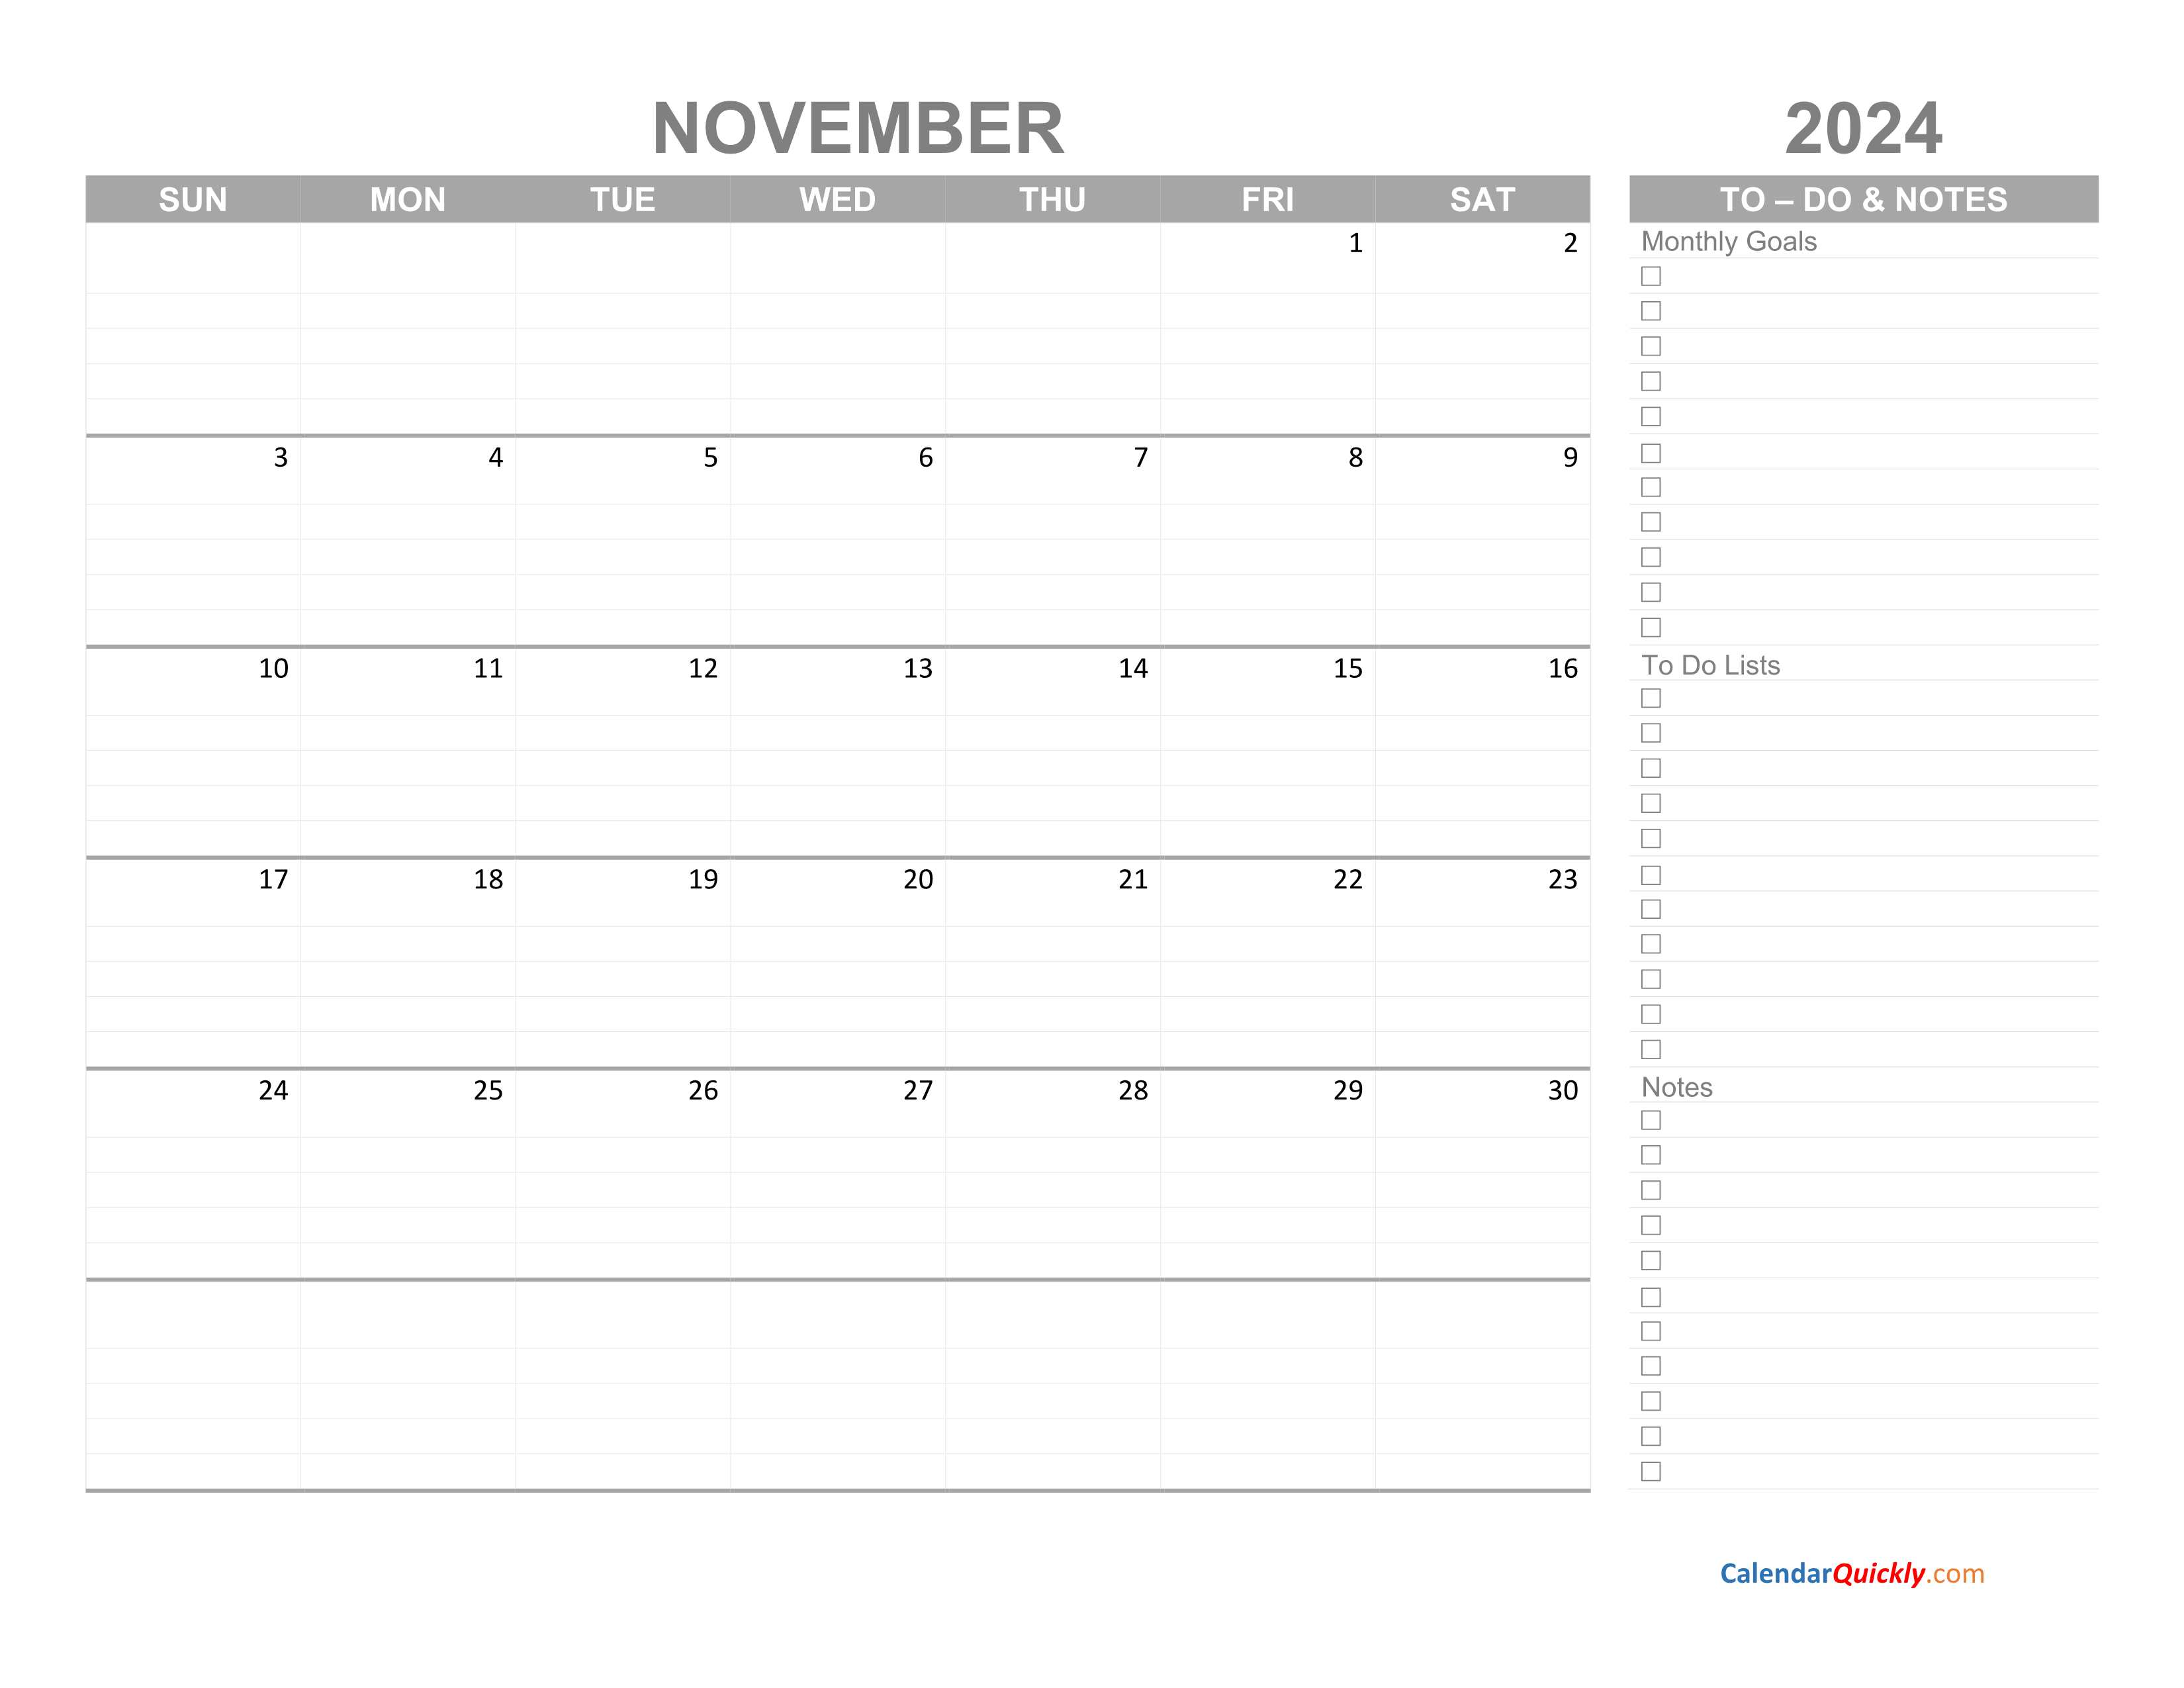 November 2024 Calendar with ToDo List Calendar Quickly